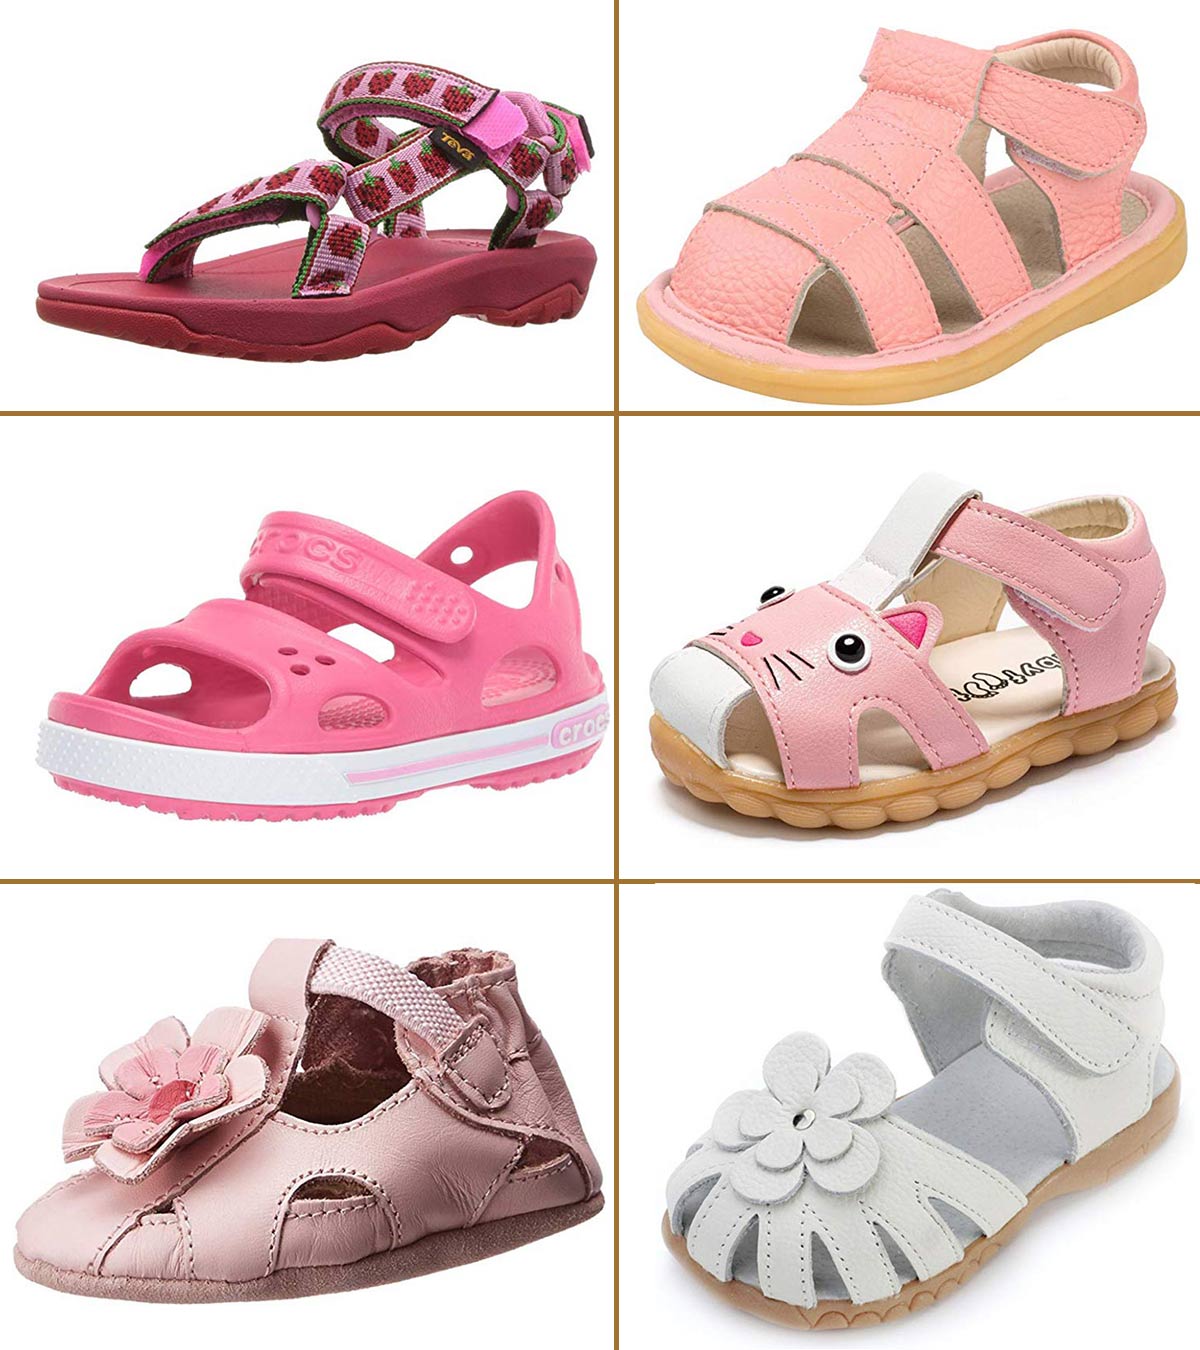 11 Best Girls' Sandals To Buy In 2023